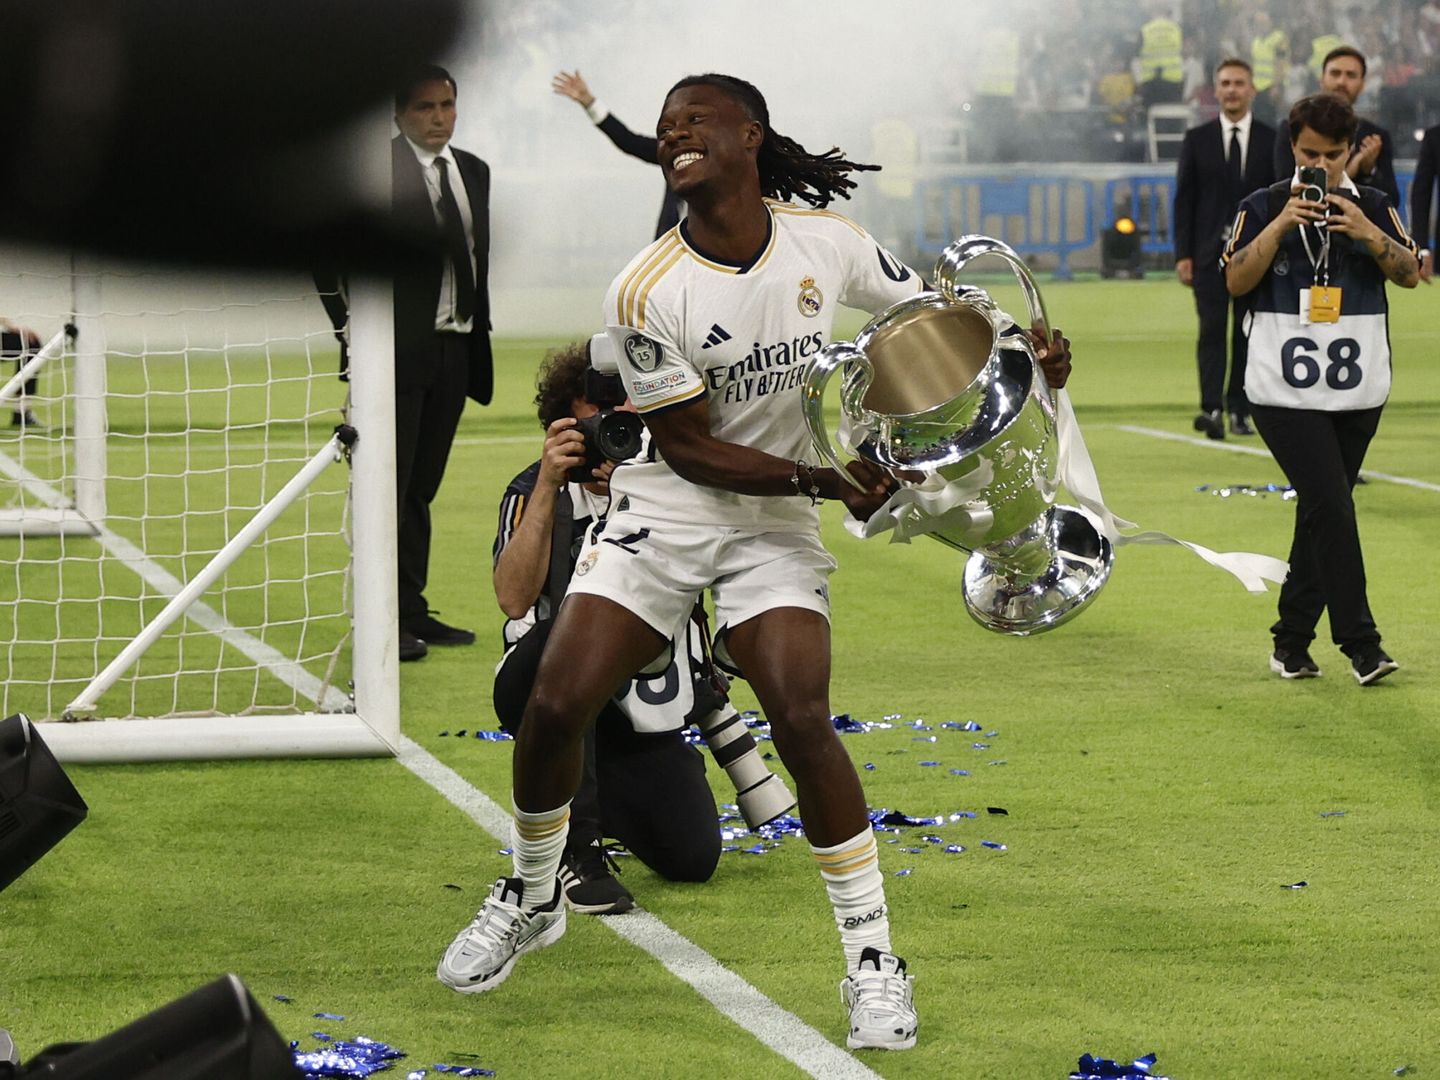 Camavinga levanta la Champions, algunas de las imágenes con más retorno para sus patrocinadores. (Reuters/John Blade)